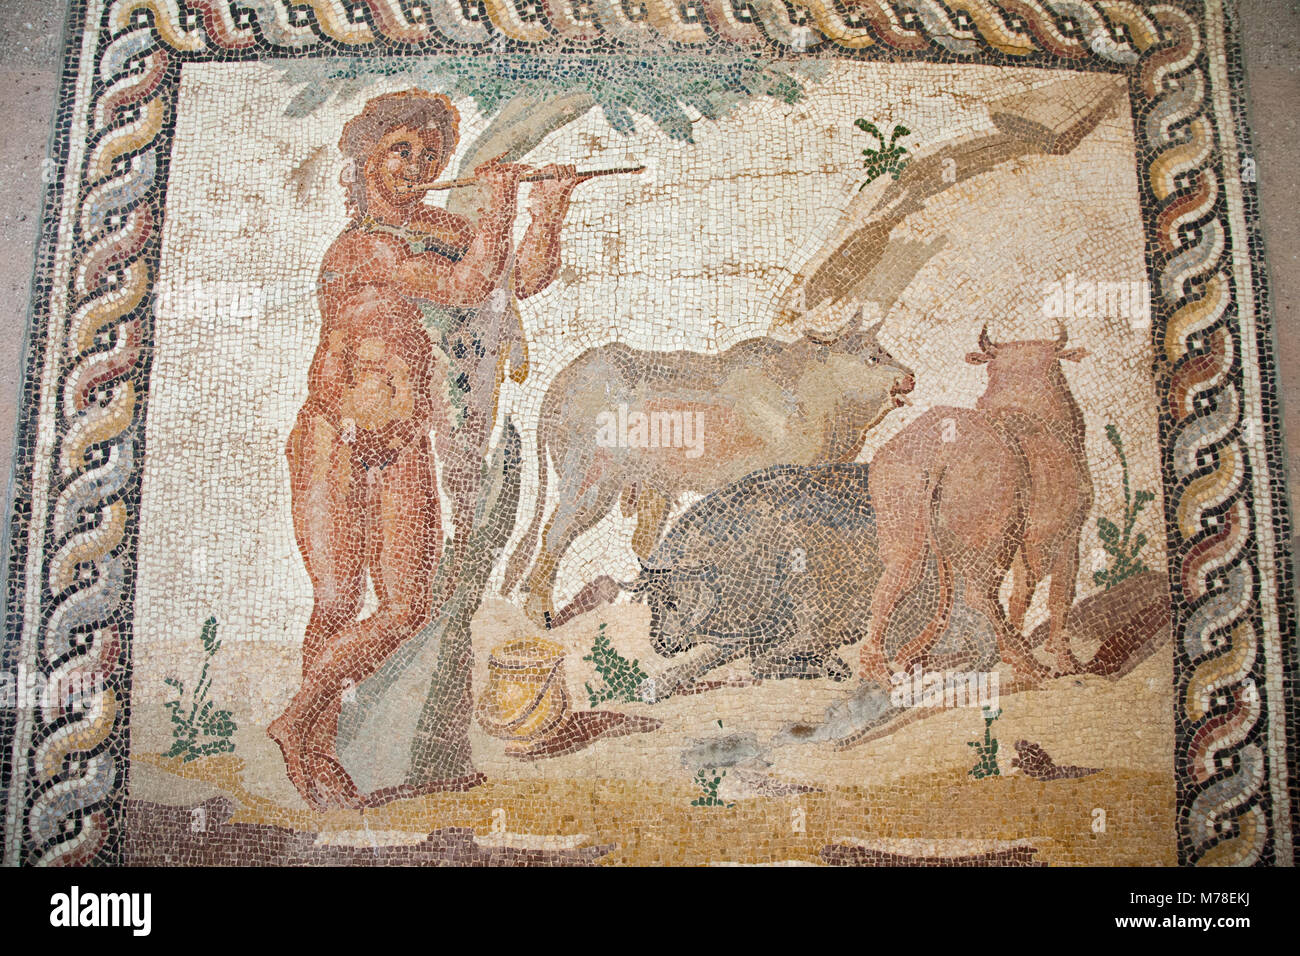 Europa, Griechenland, Peloponnes, Alt-korinth, Archäologisches Museum, Mosaik aus einer Etage einer römischen Villa, die eine pastorale Szene Stockfoto